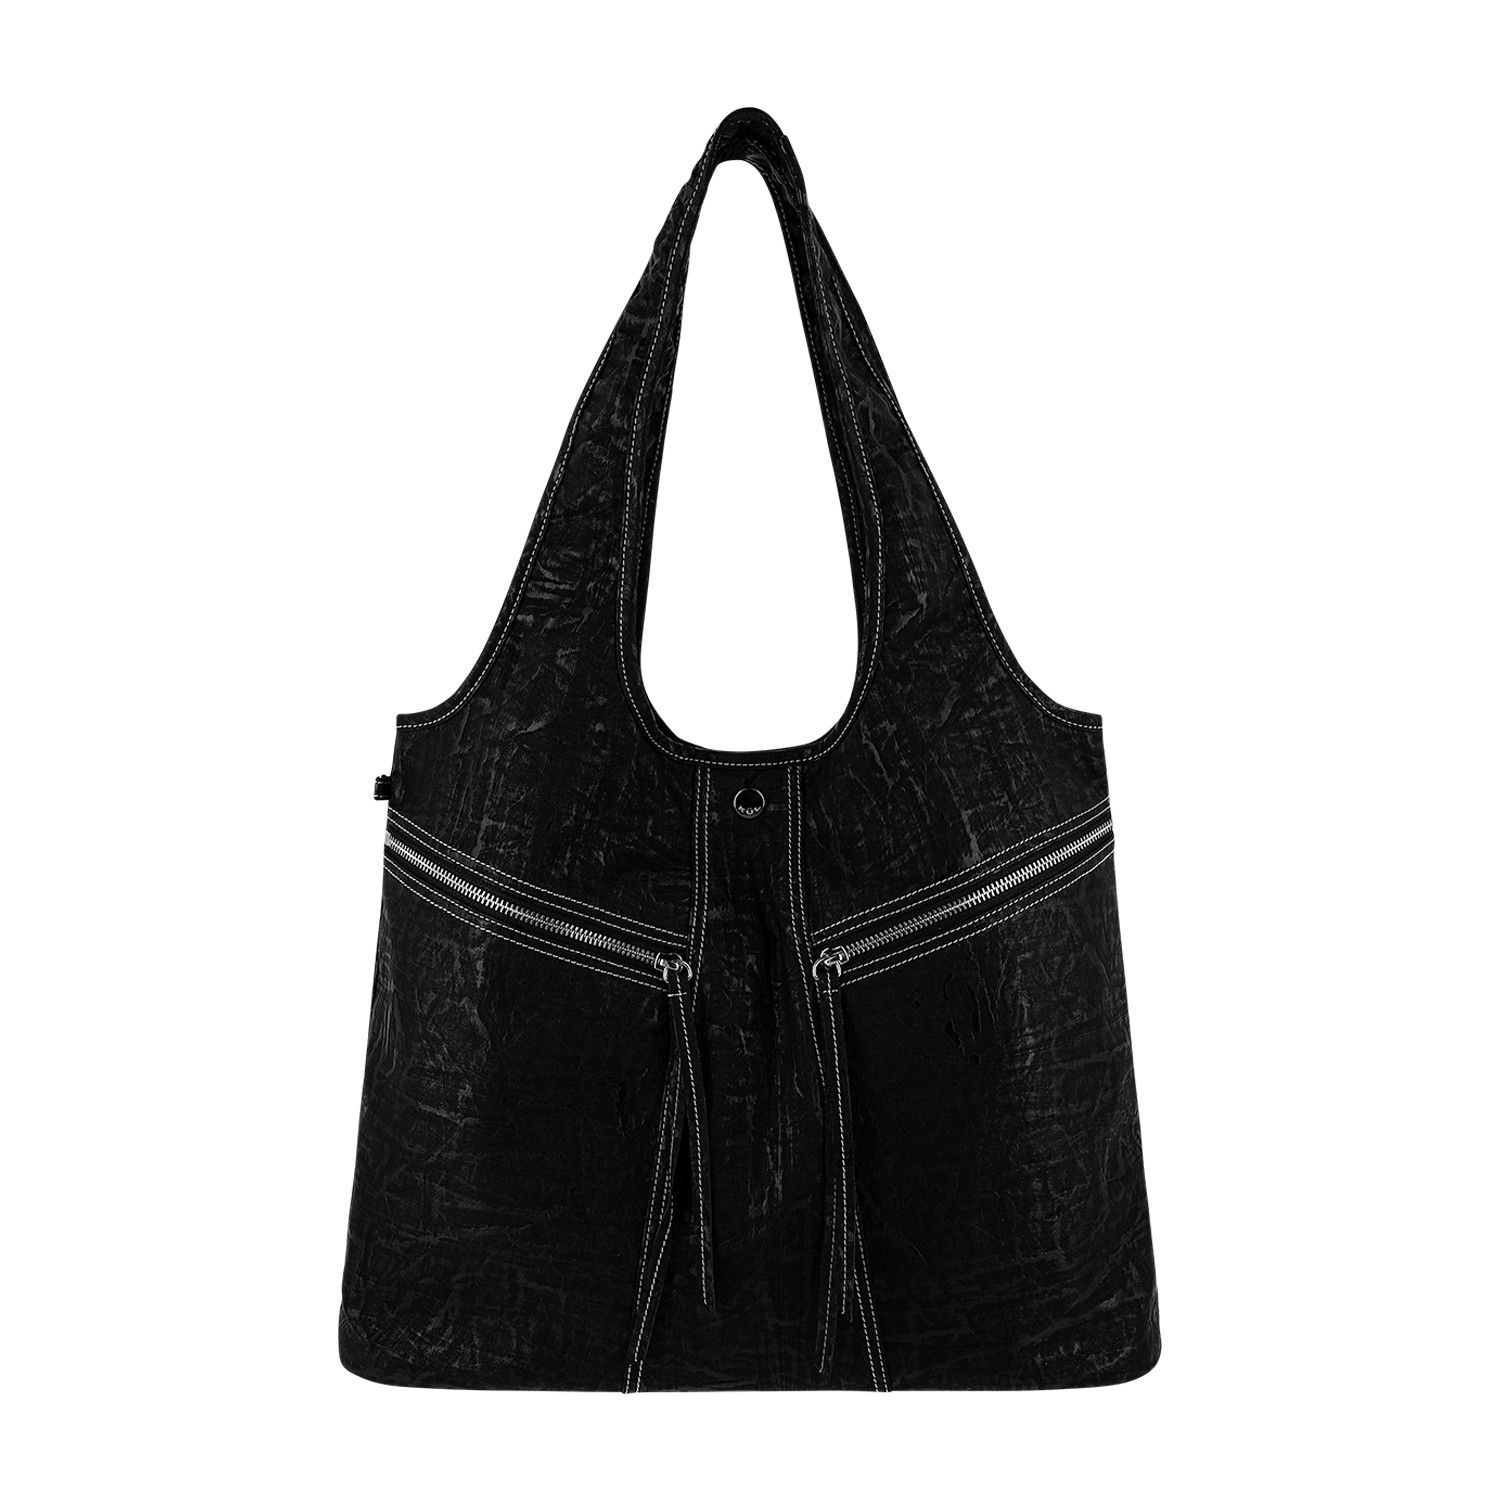 Vintage stitch bag [Black]